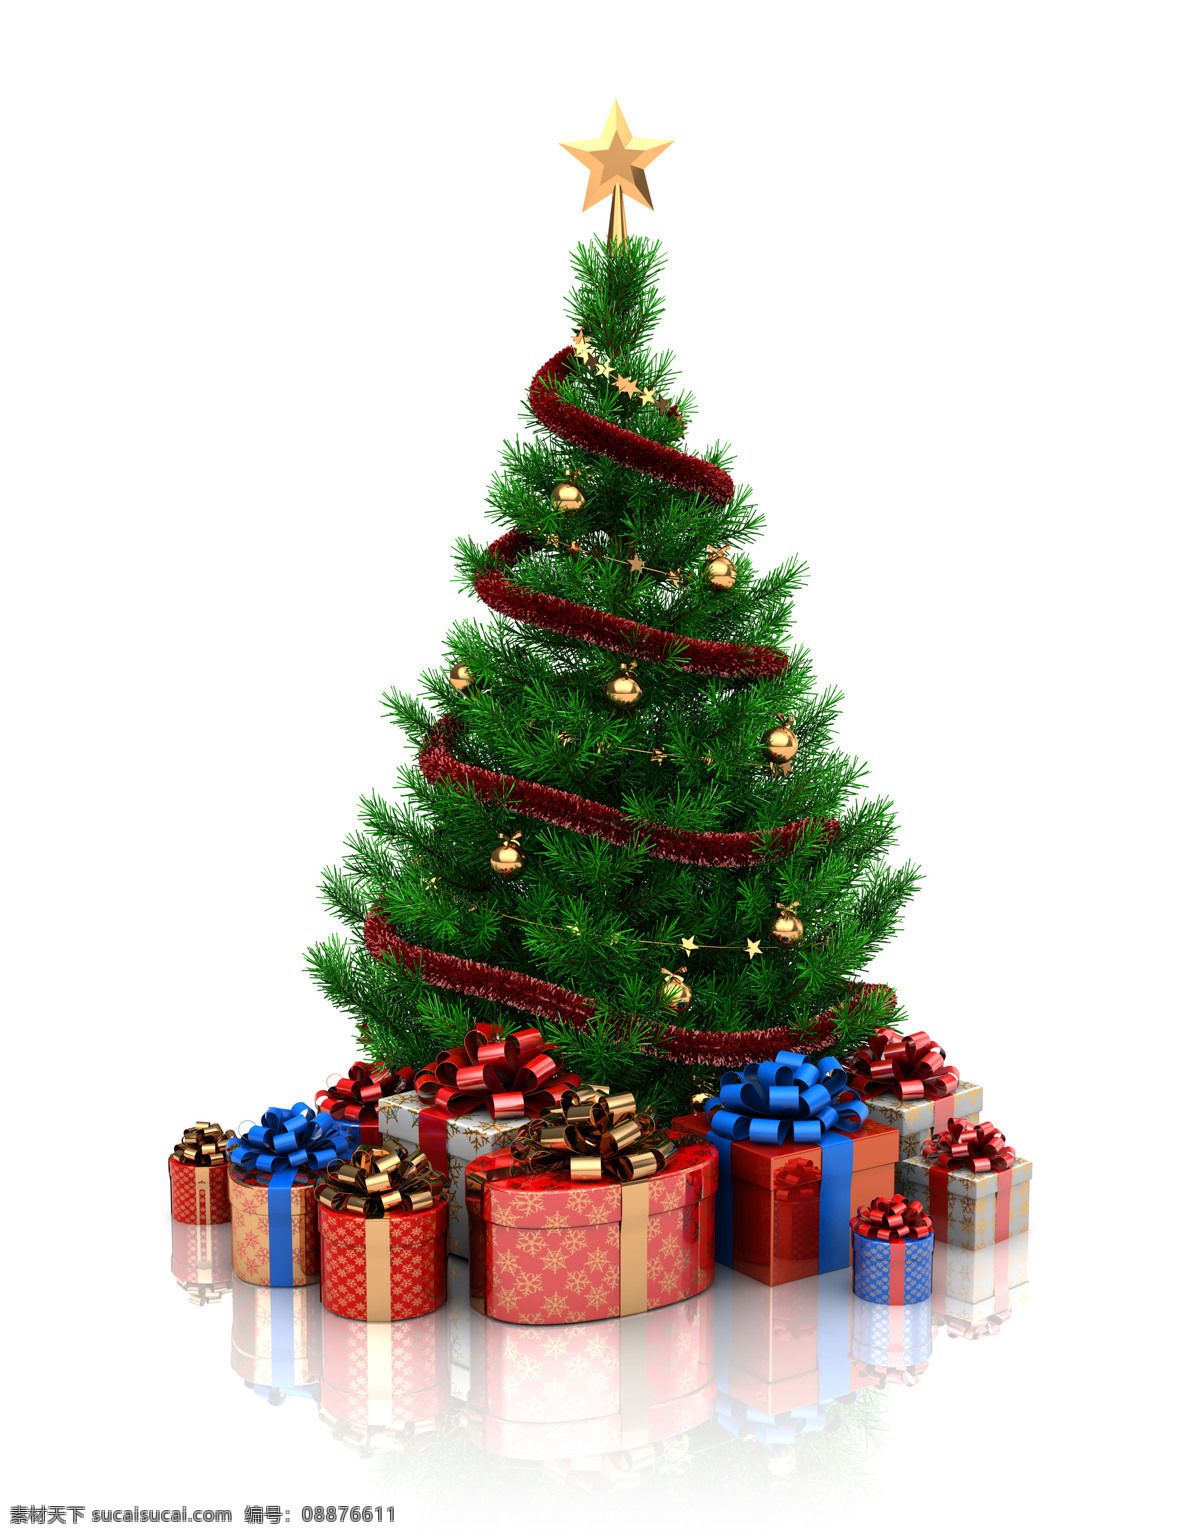 圣诞 树下 礼物 盒 圣诞树 礼物盒 圣诞节 蝴蝶结 背景 节日庆典 生活百科